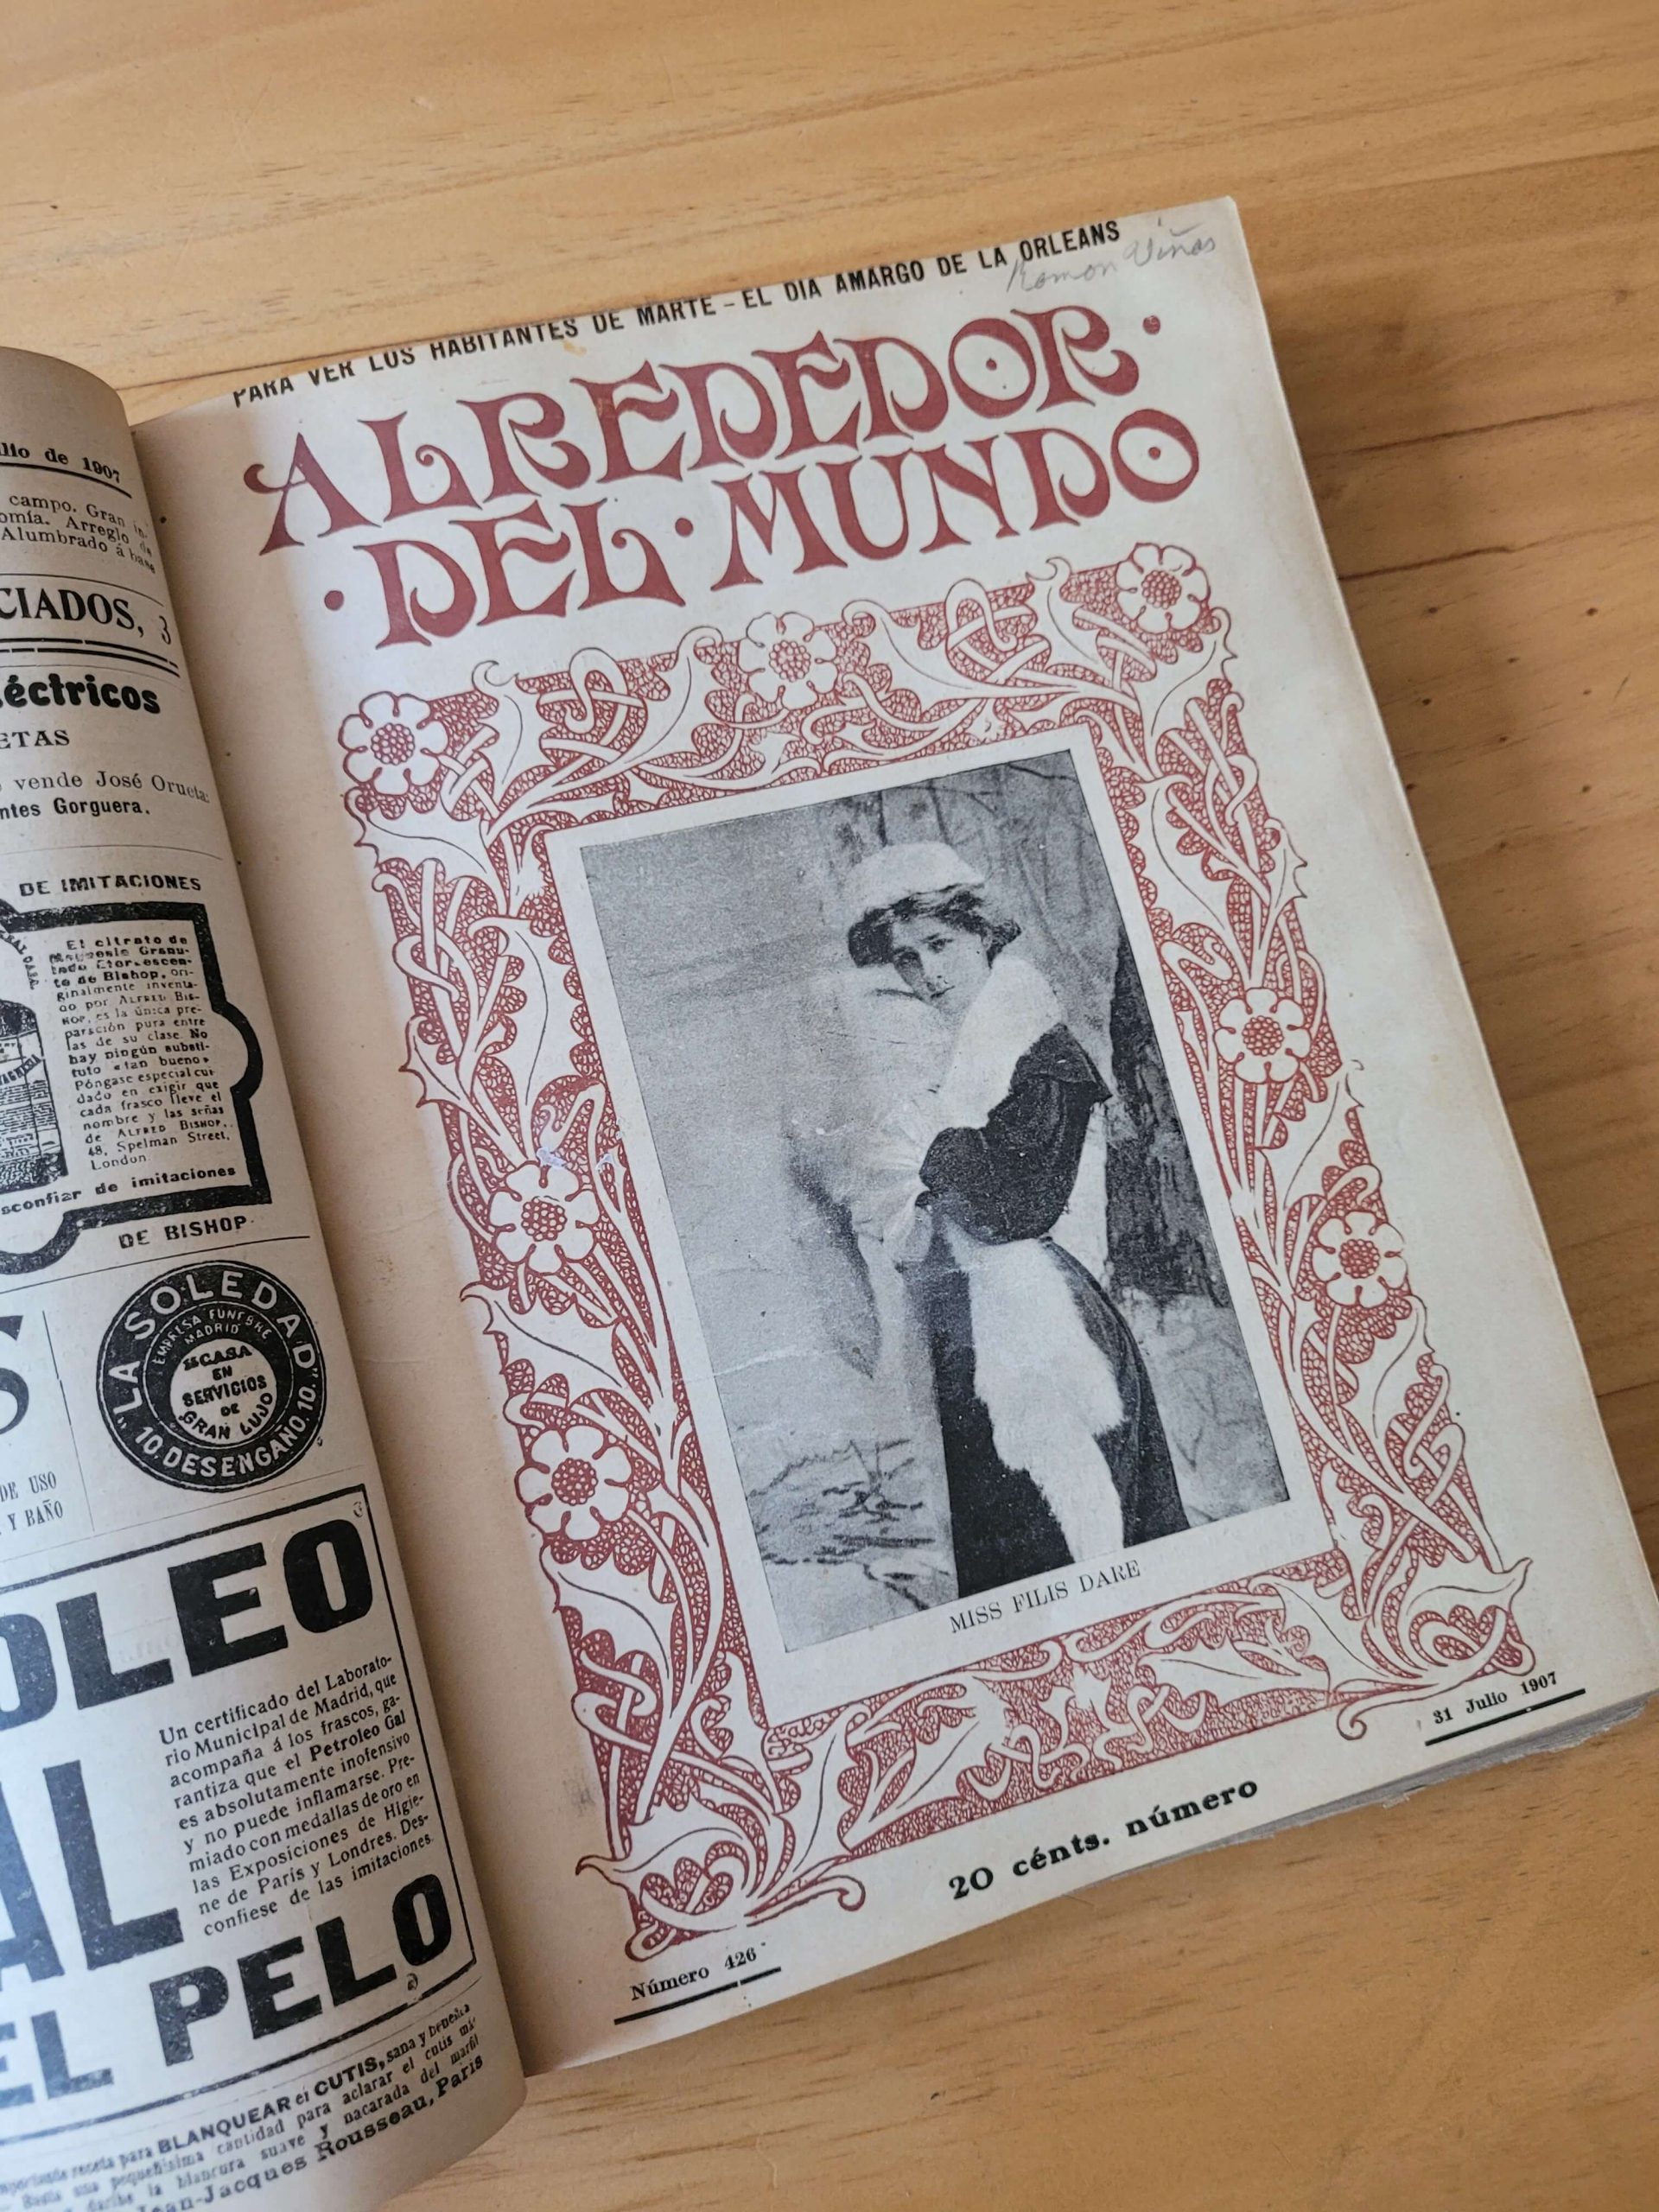 (1907) Empaste revista ALREDEDOR DEL MUNDO (25 revistas)